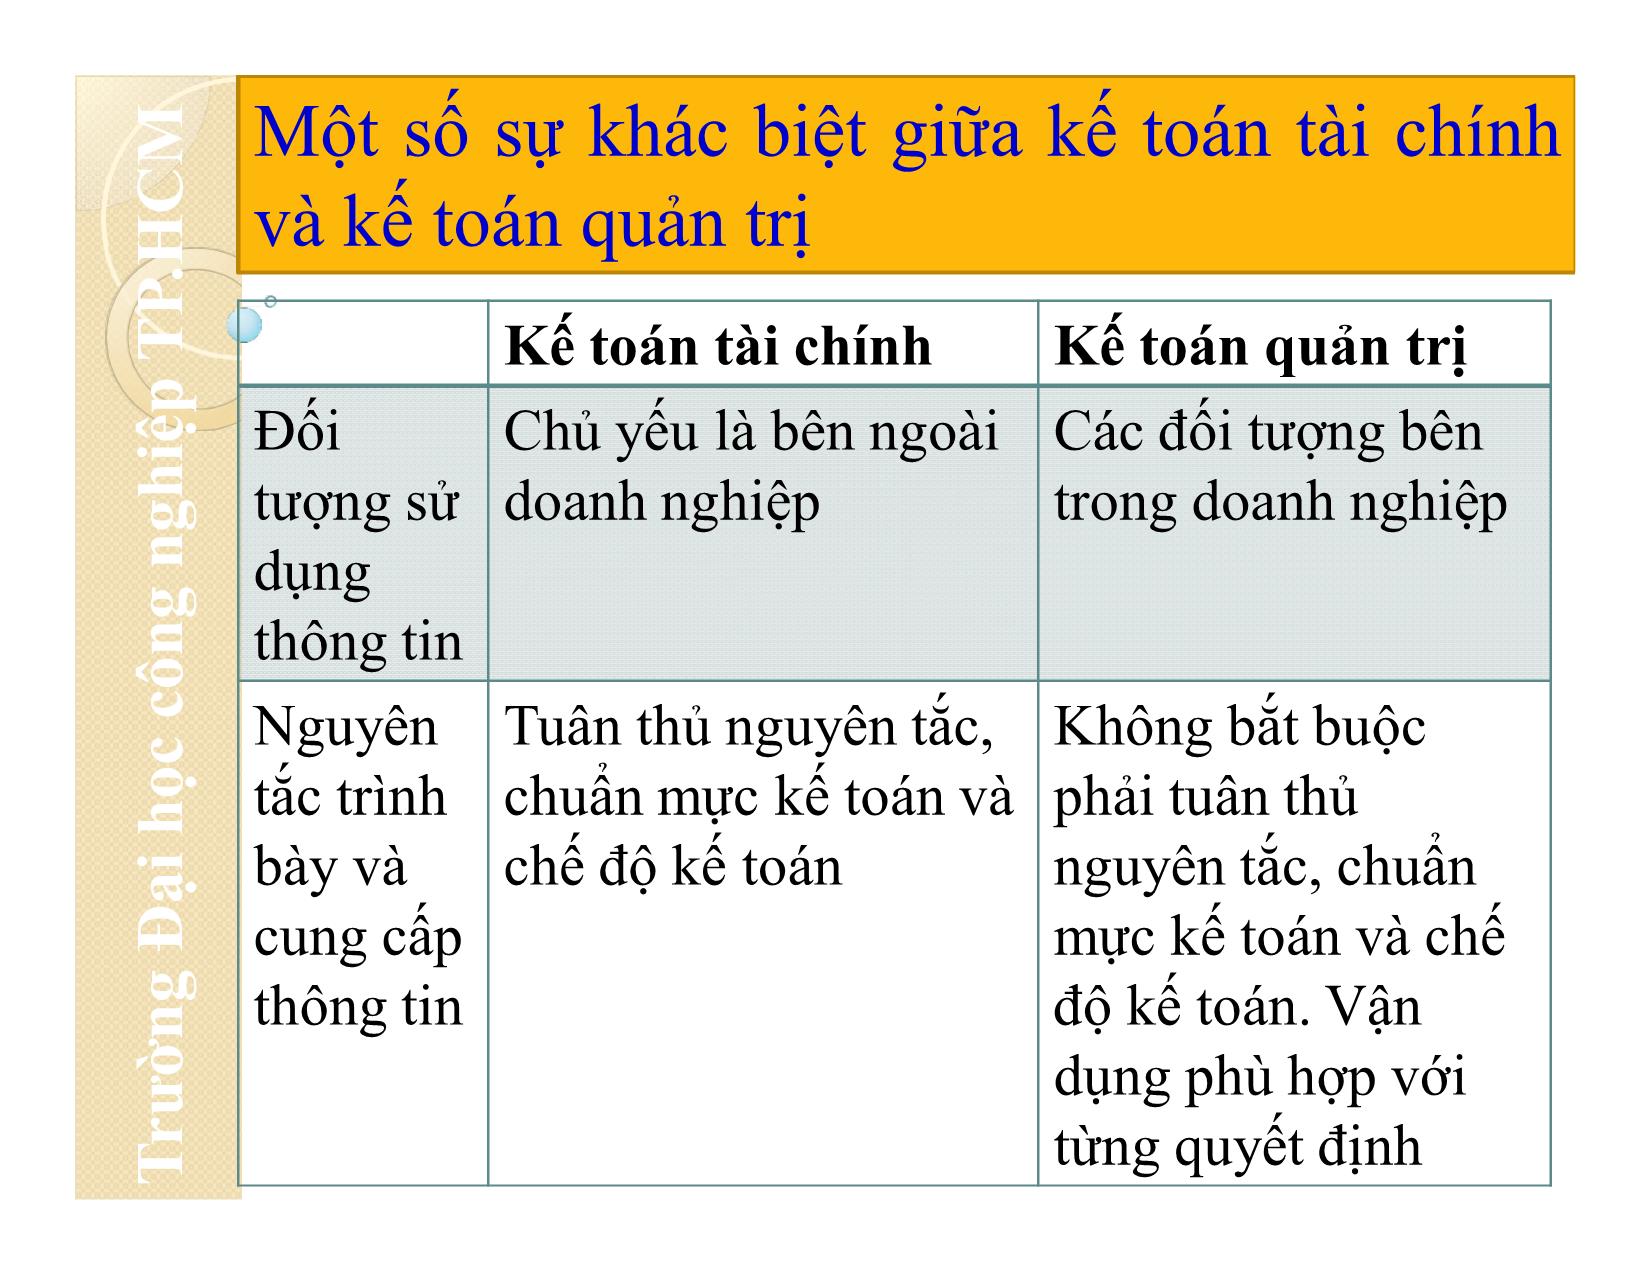 Bài giảng Nguyên lý kế toán - Chương 1: Tổng quan về kế toán - Đại học Công nghiệp thành phố Hồ Chí Minh trang 10